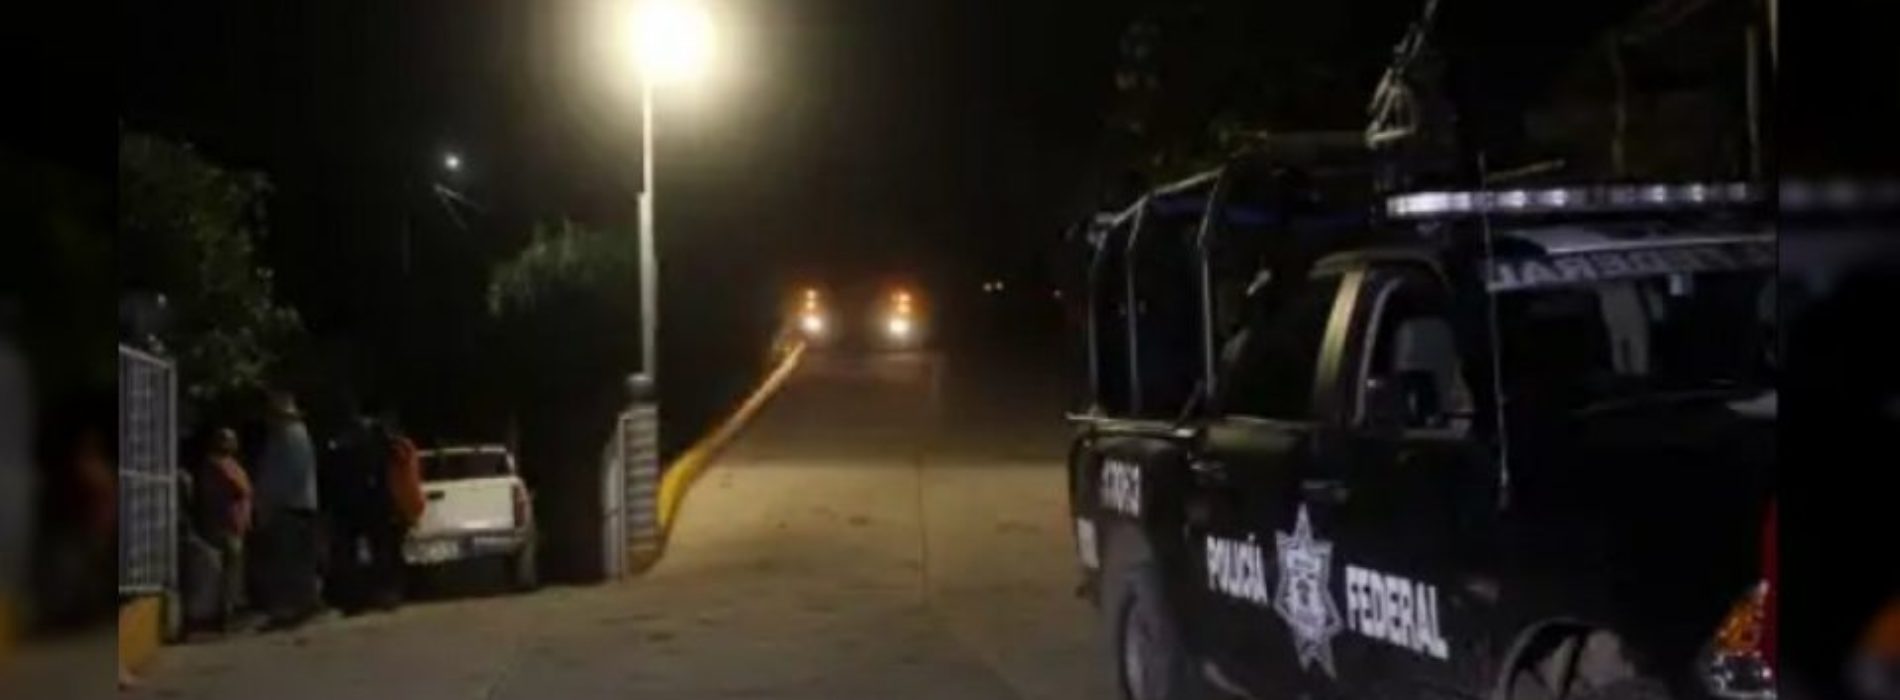 Asesinan a jefe de la policía de Chilapa, Guerrero, durante
fiestas patronales